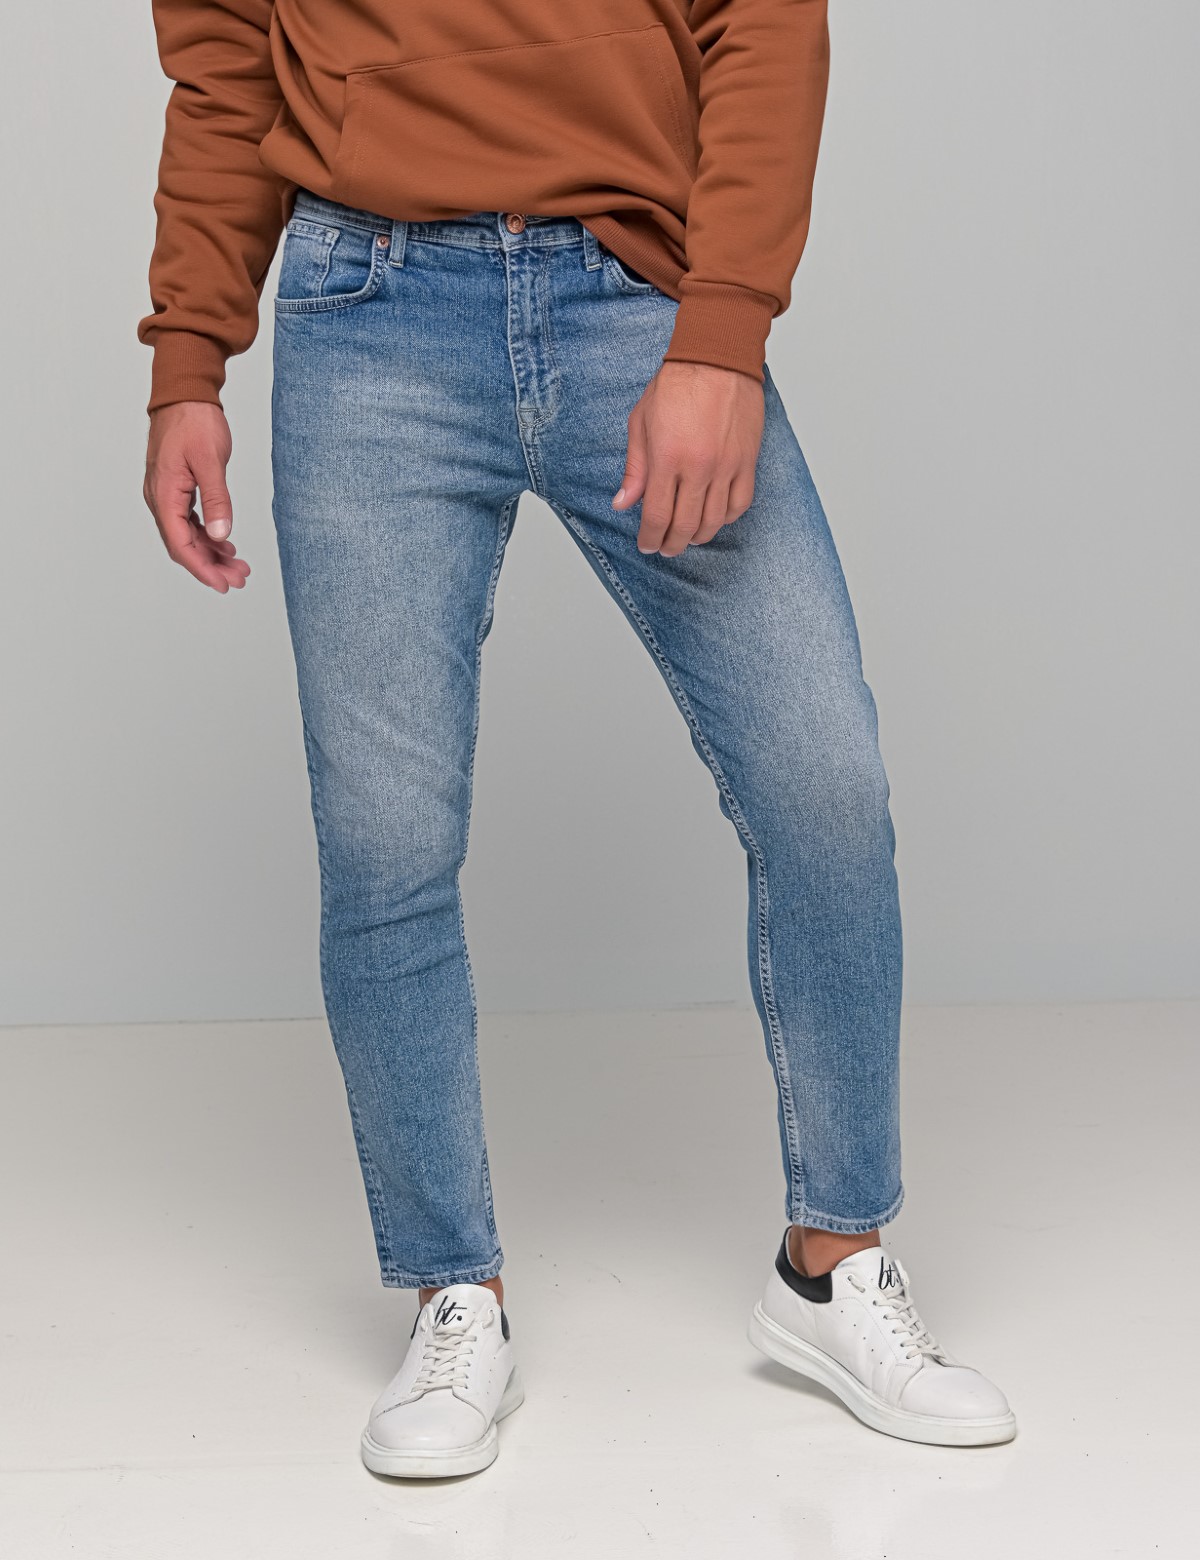 Ανδρικό χλώριο τζιν Boyfriend παντελόνι με φθορές 4690